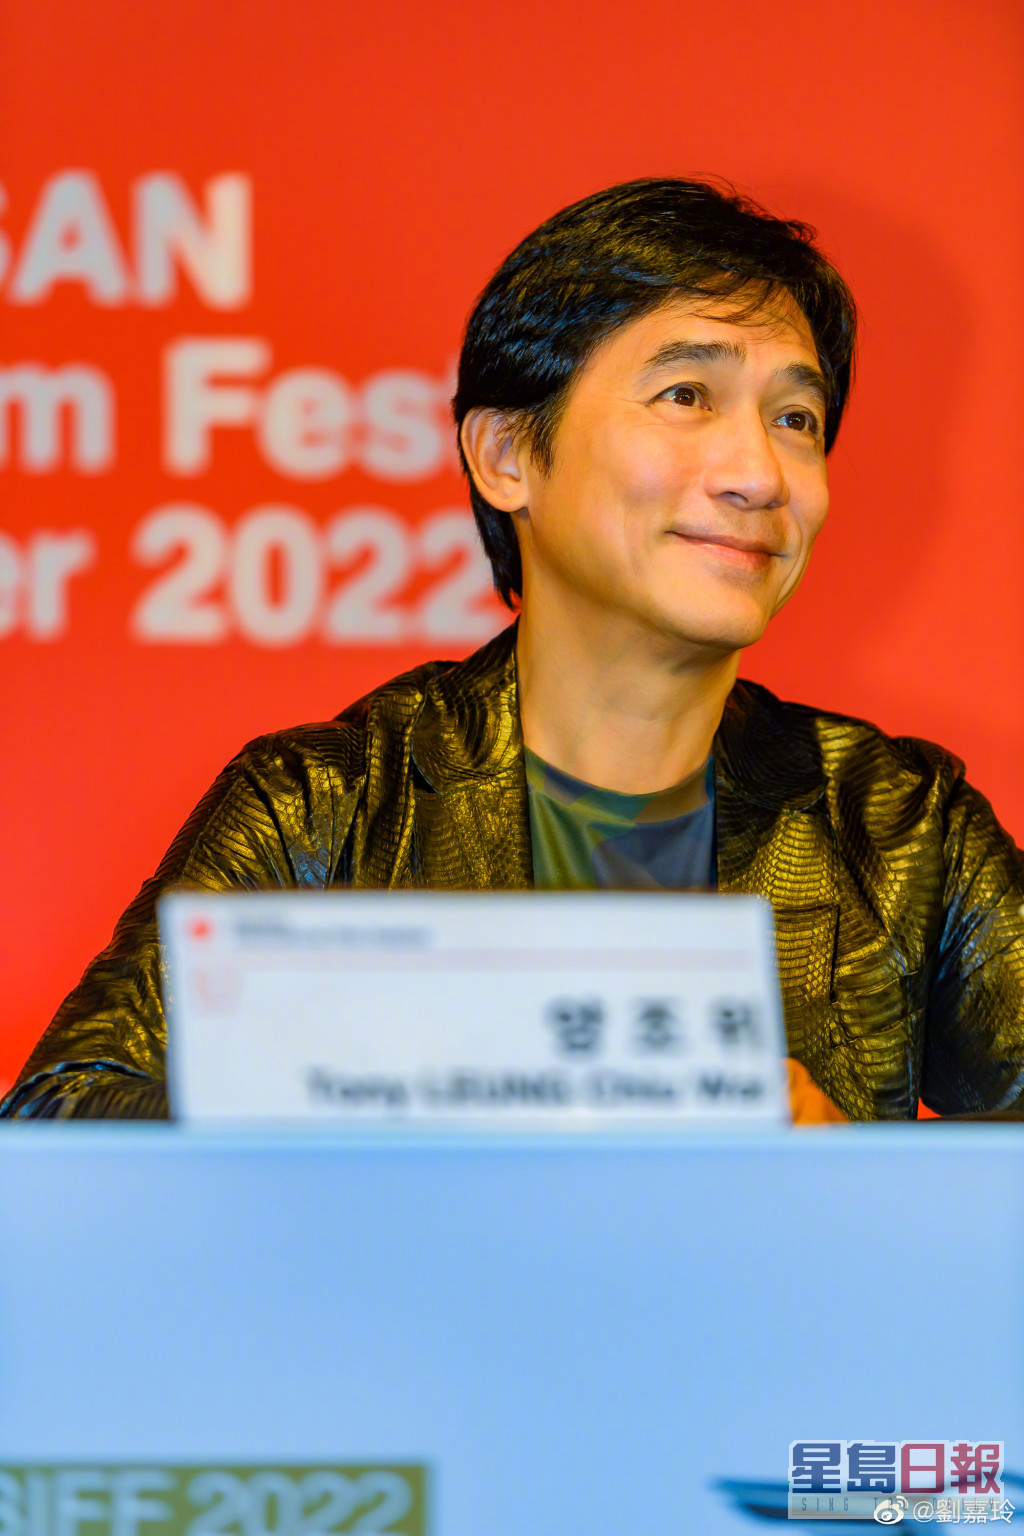 梁朝伟早前到韩国参加第27届釜山国际电影节，在当地大受欢迎。